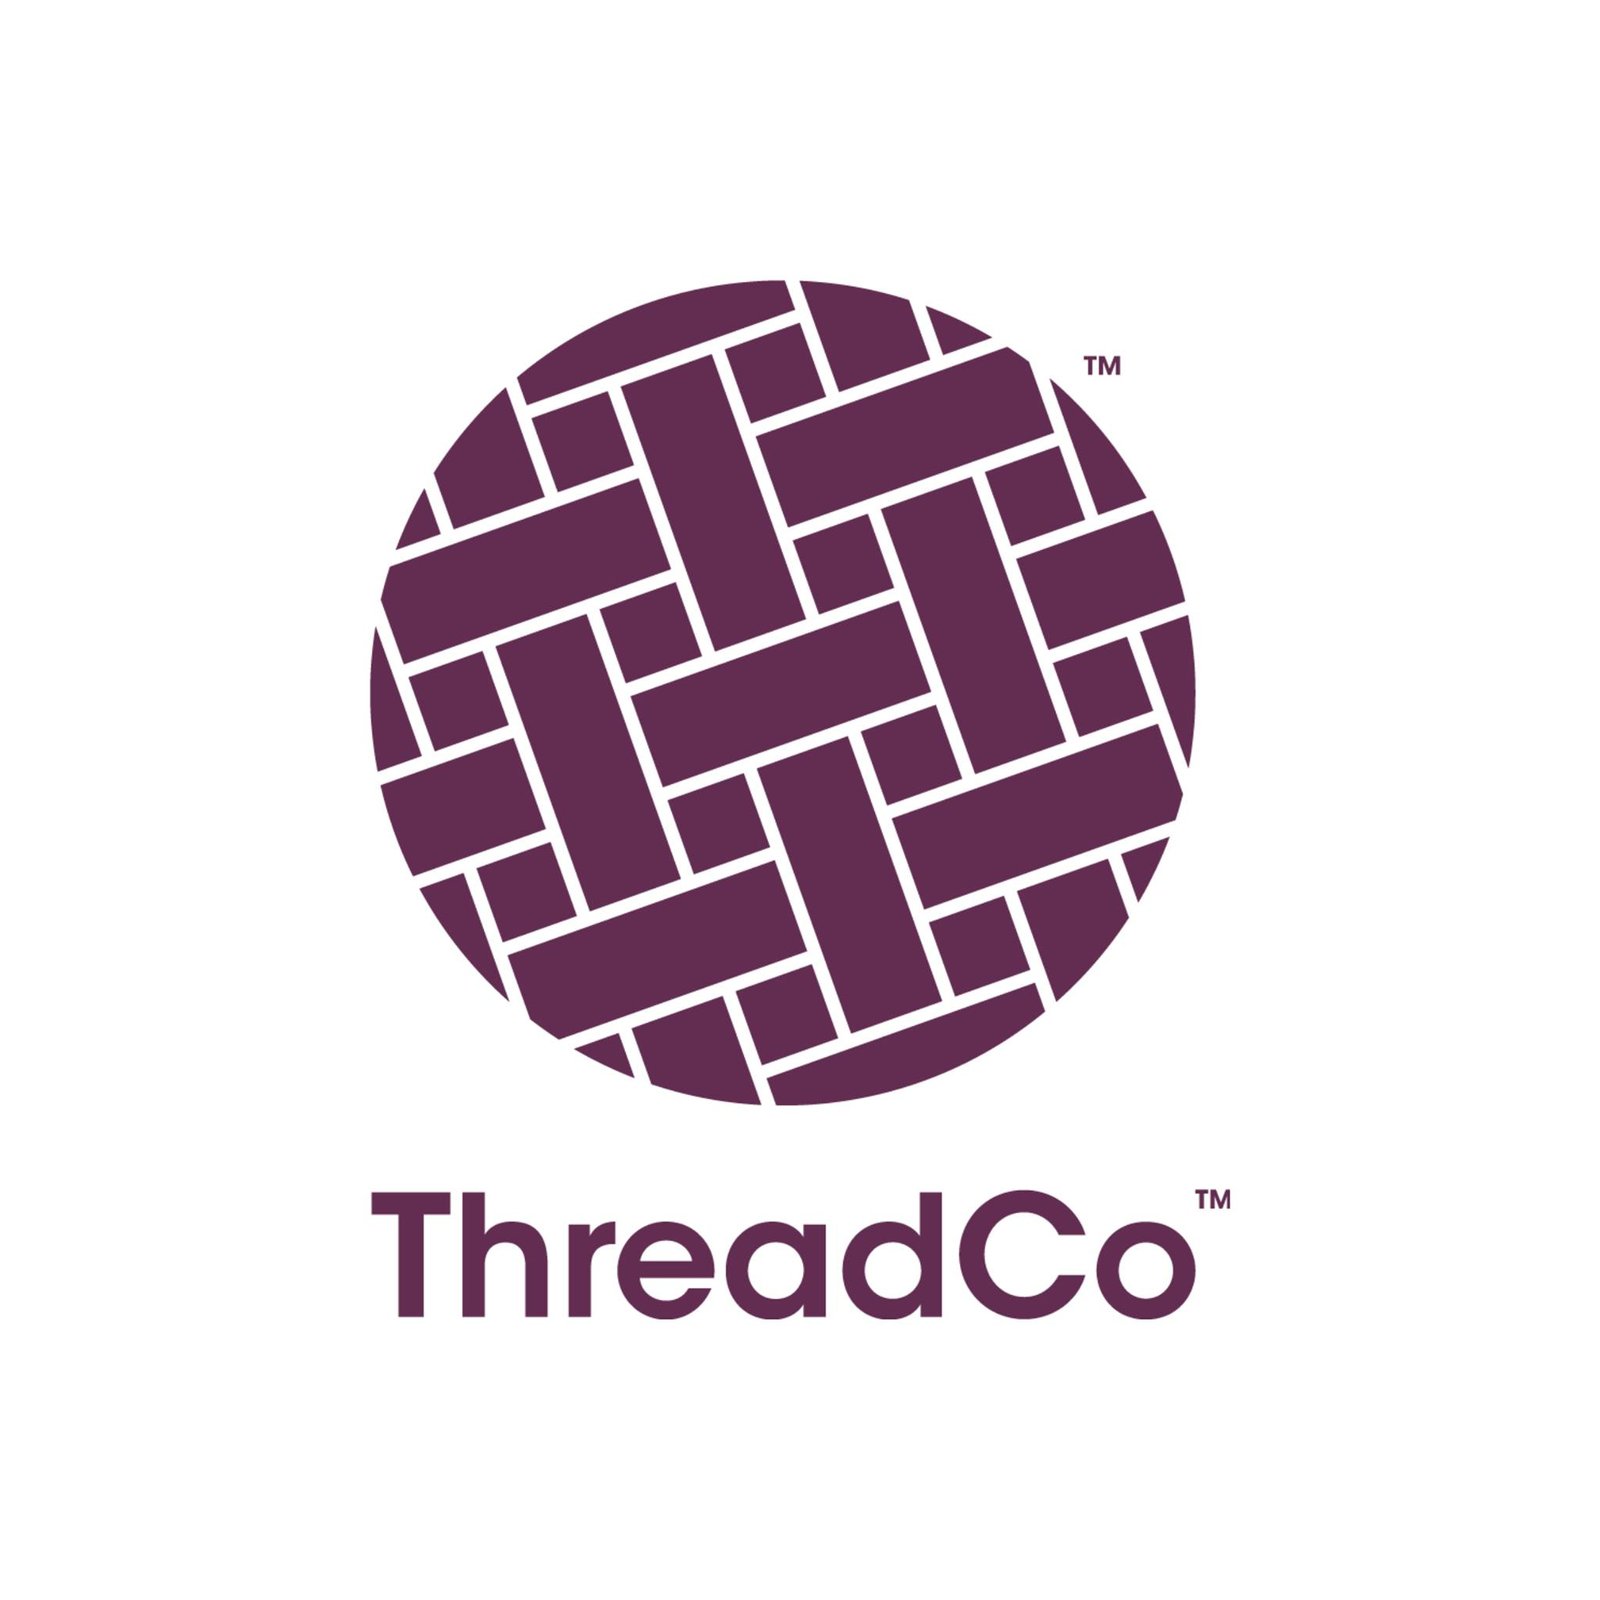 Thread Co